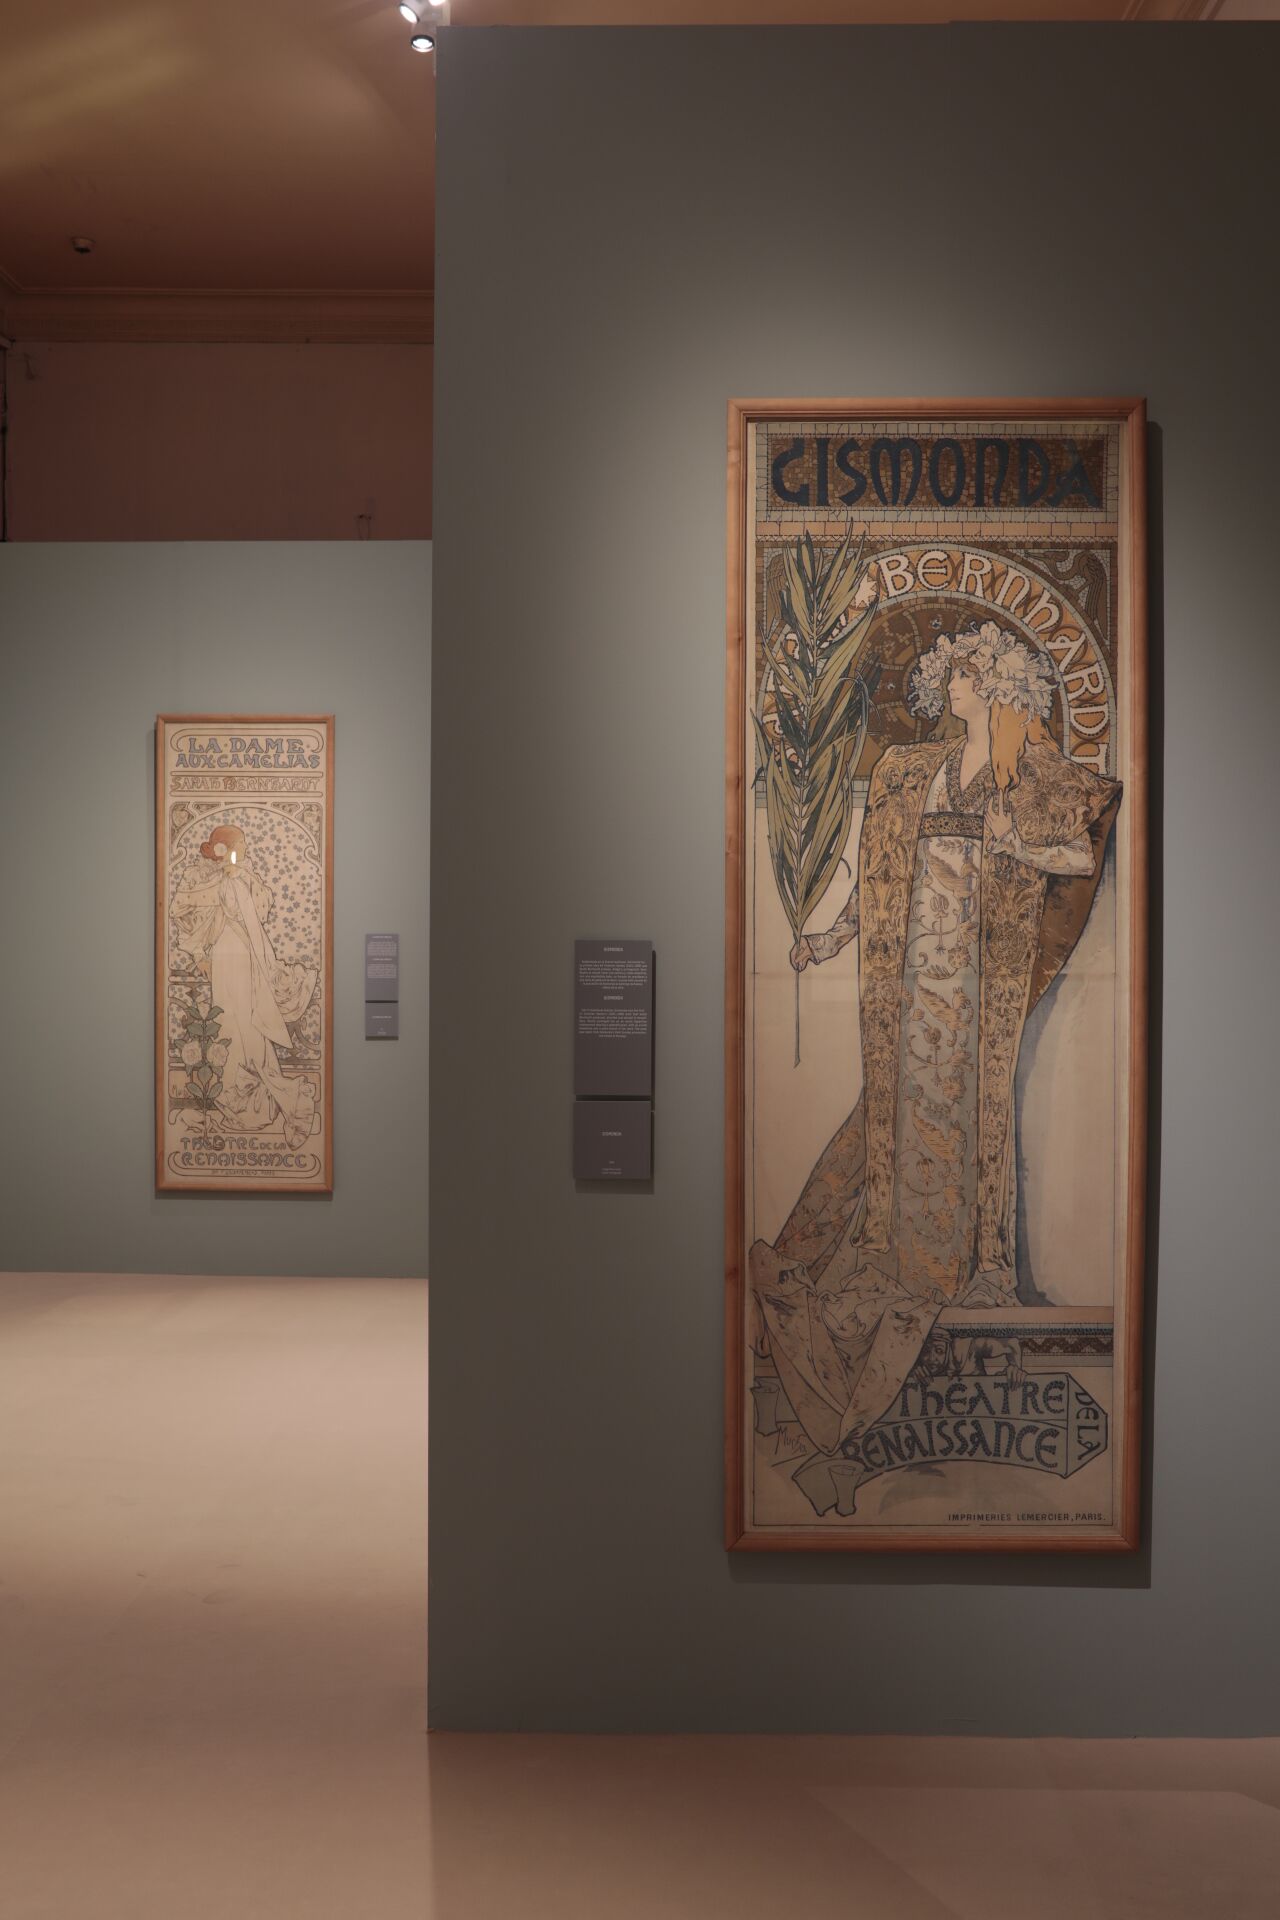 Vista de la exposición y de uno de los carteles de Sarah Bernhardt. ©Jesús Varillas. Cortesía Arthemisia